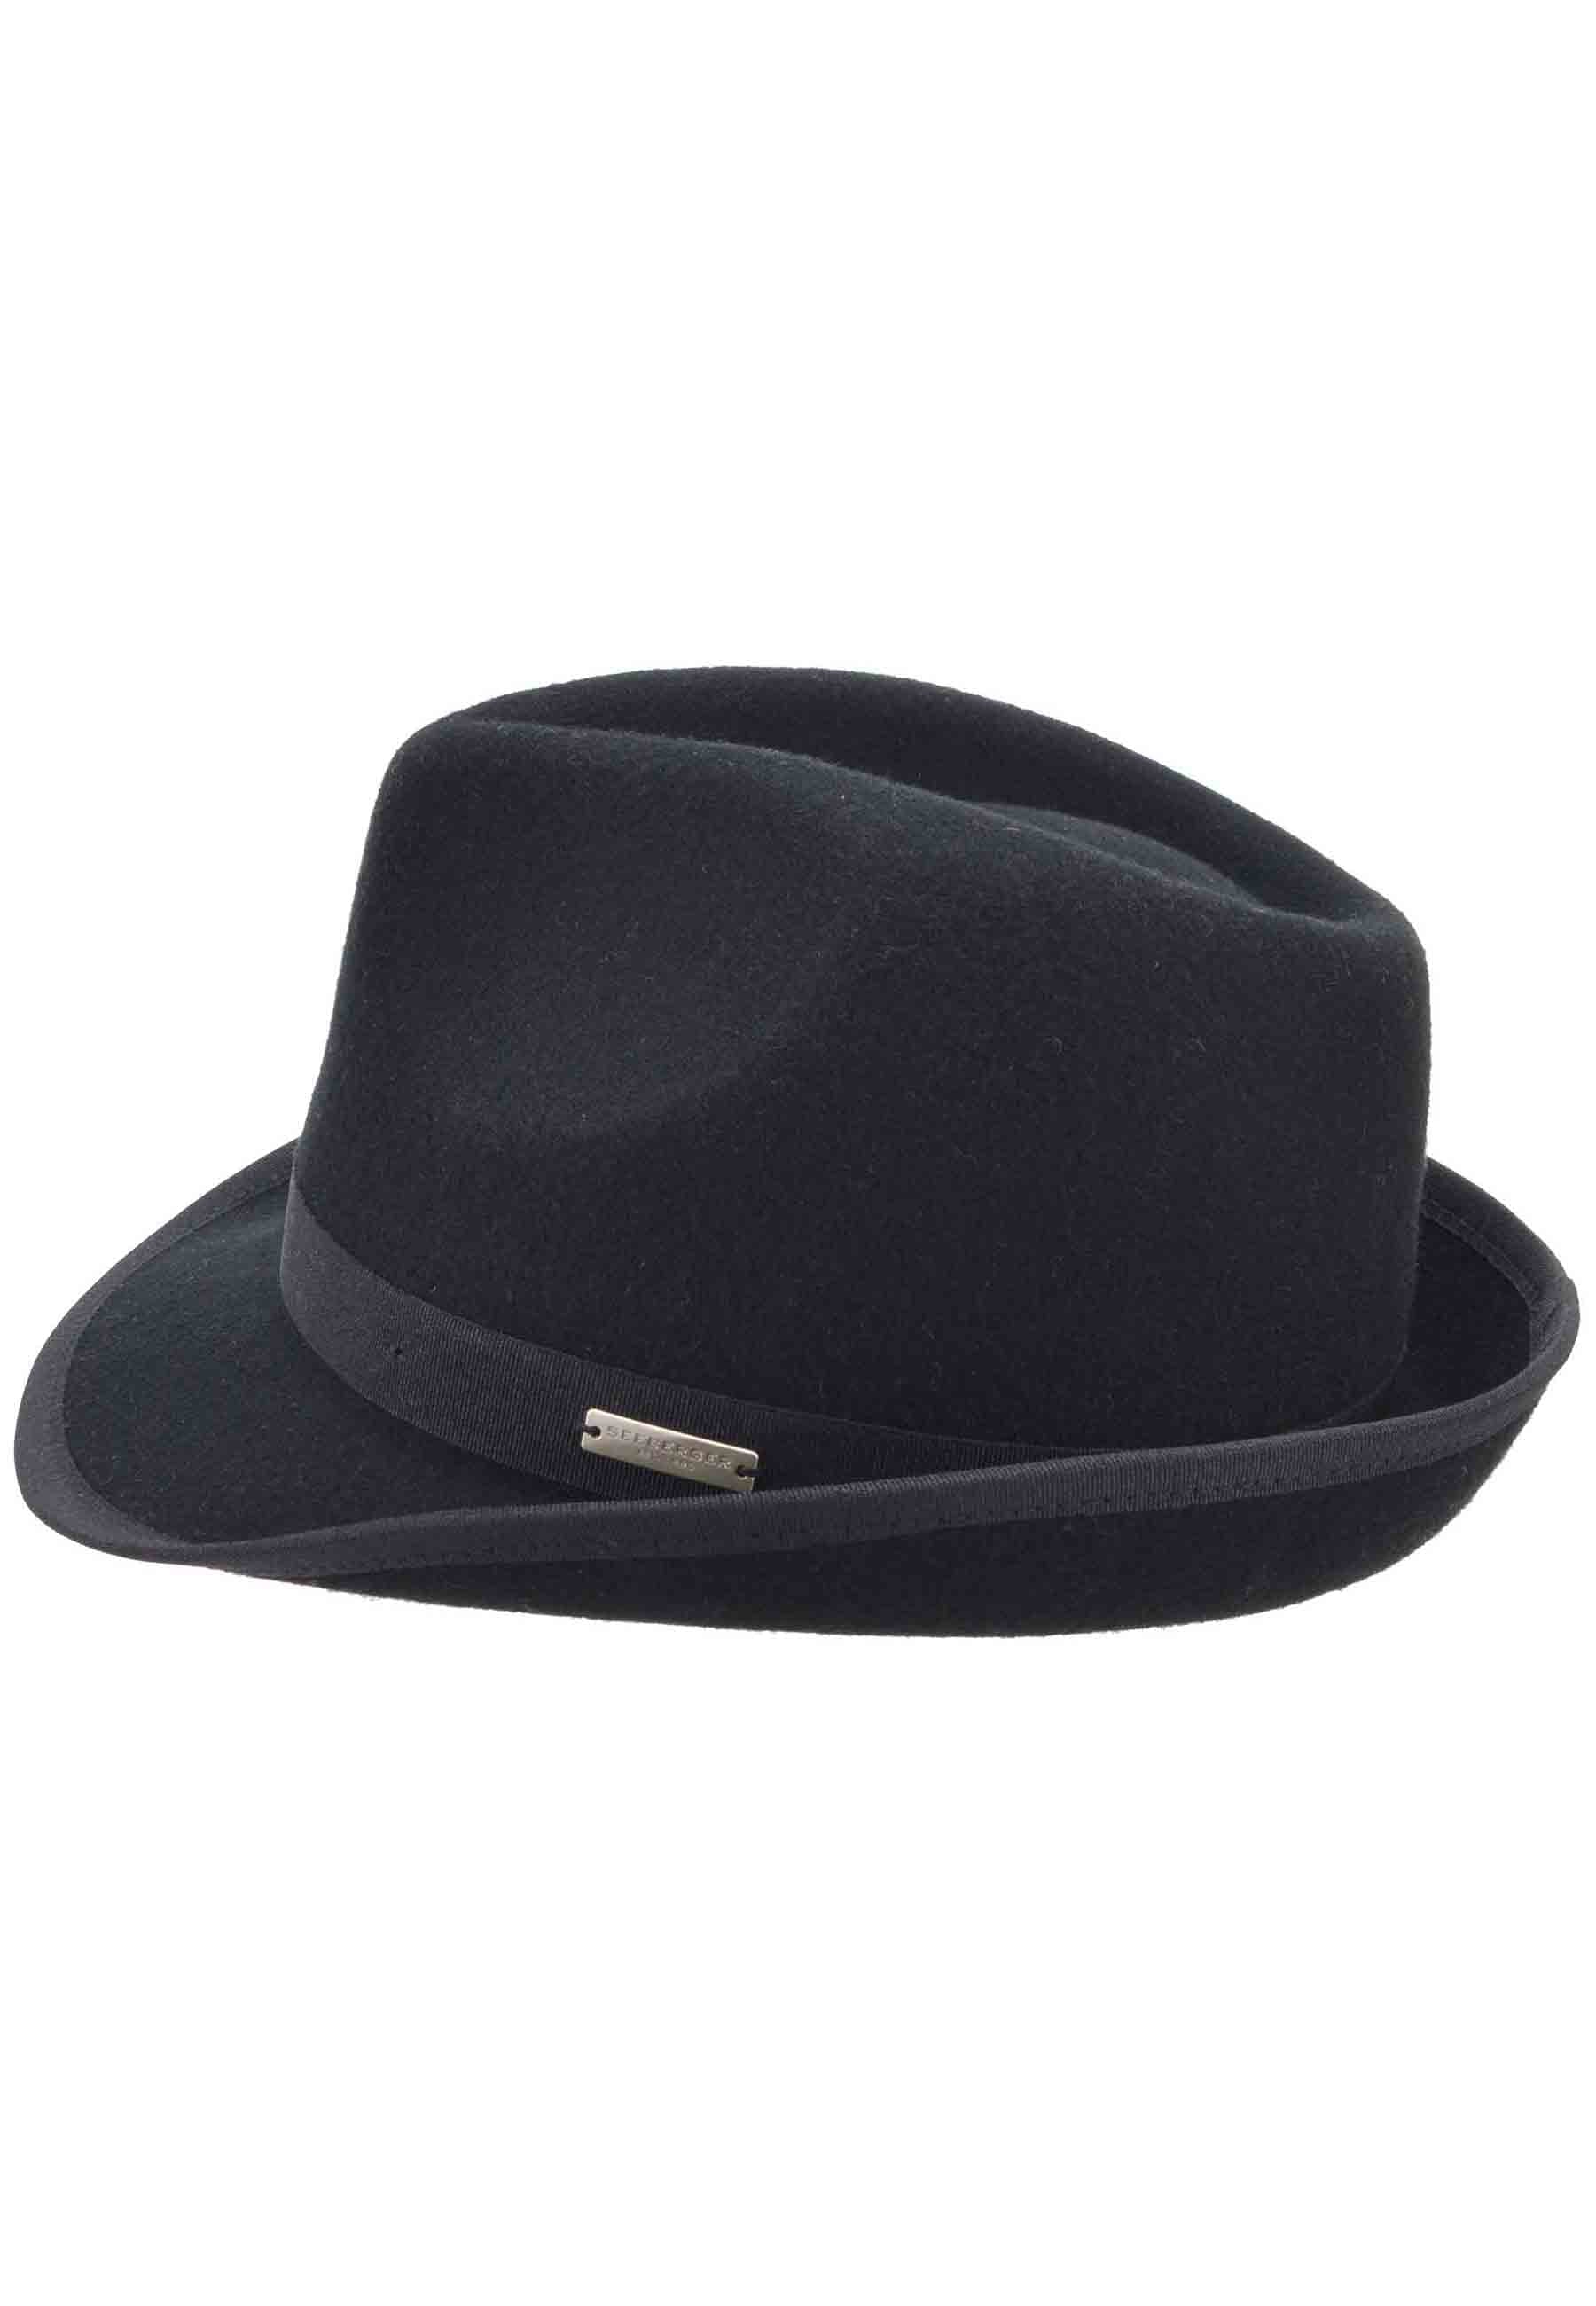 Women's black wool Trilby hat